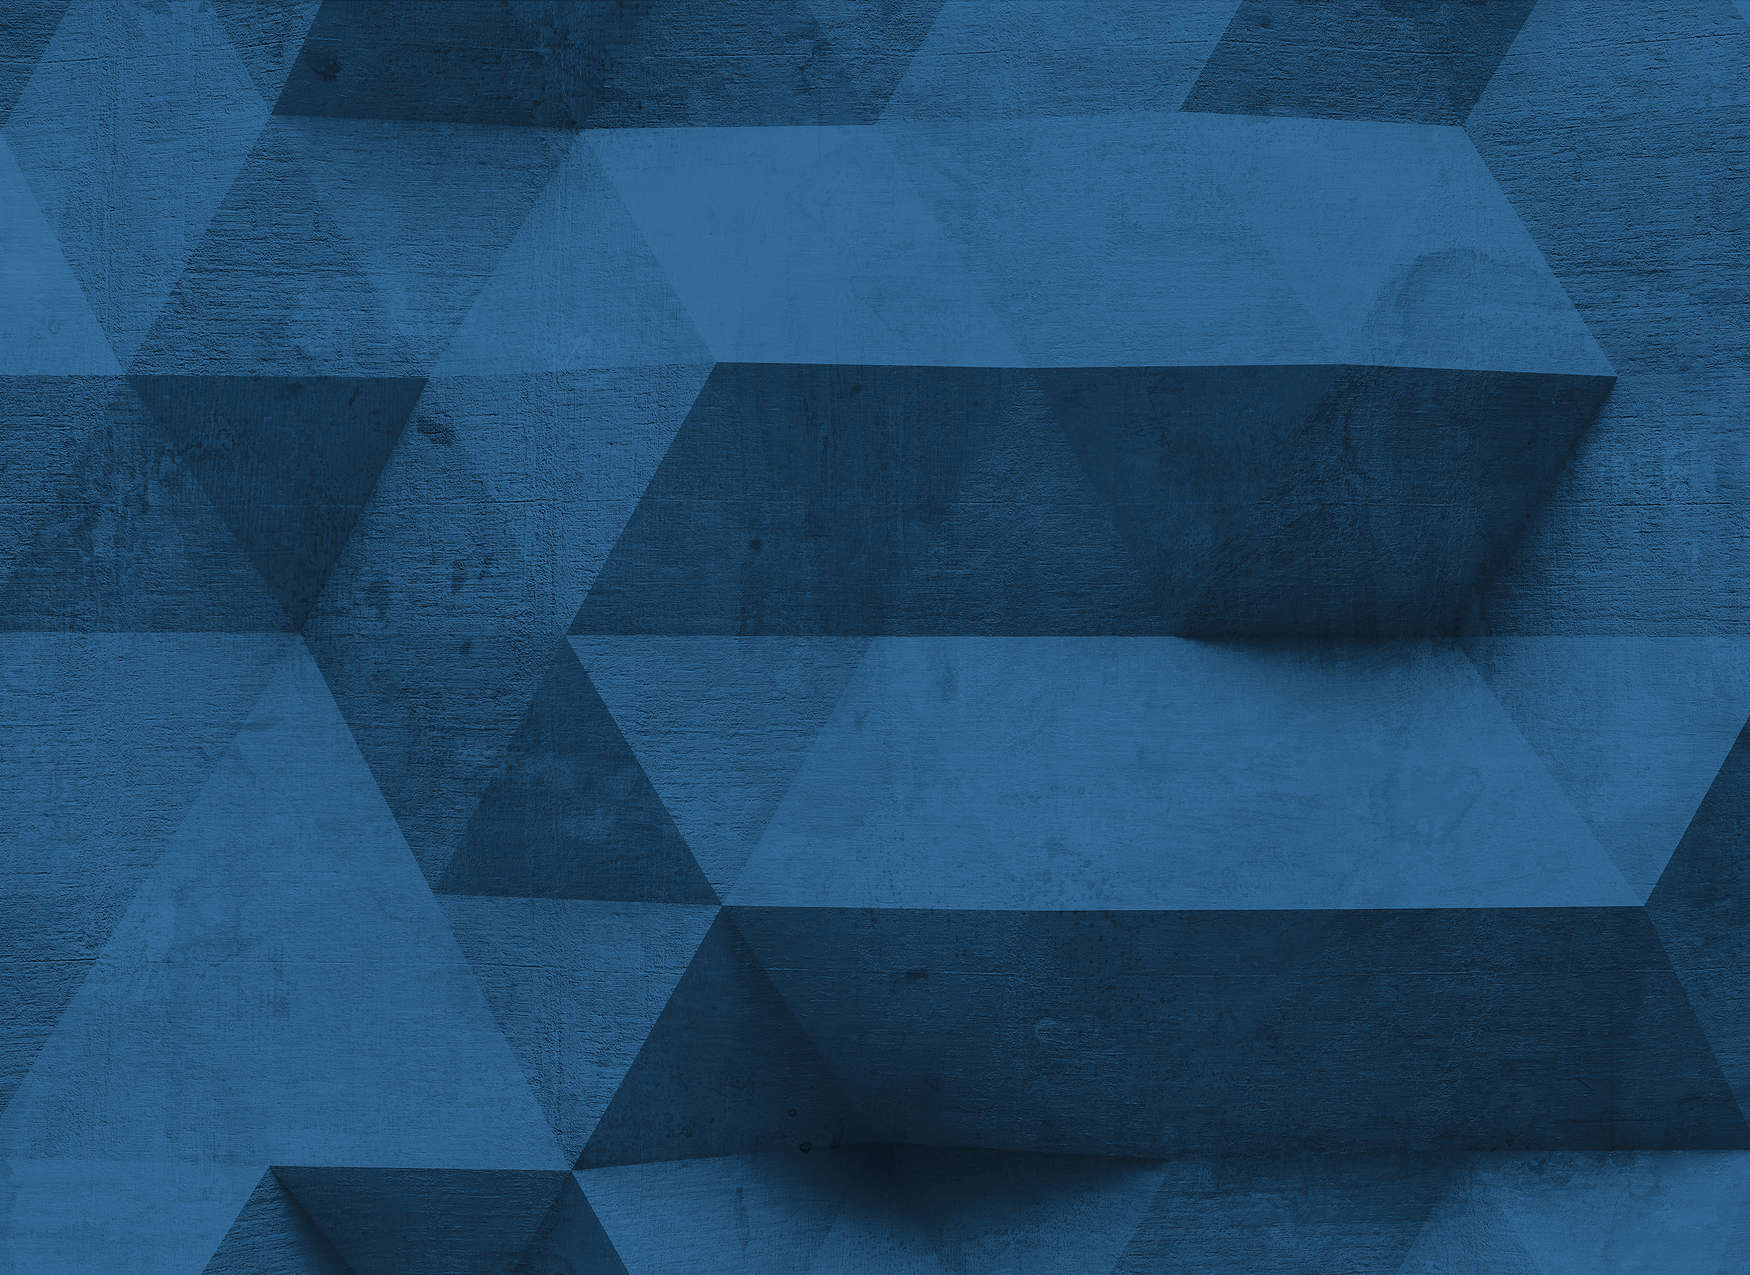             Betonnen muur met 3D-patronen Onderlaag behang - Blauw
        